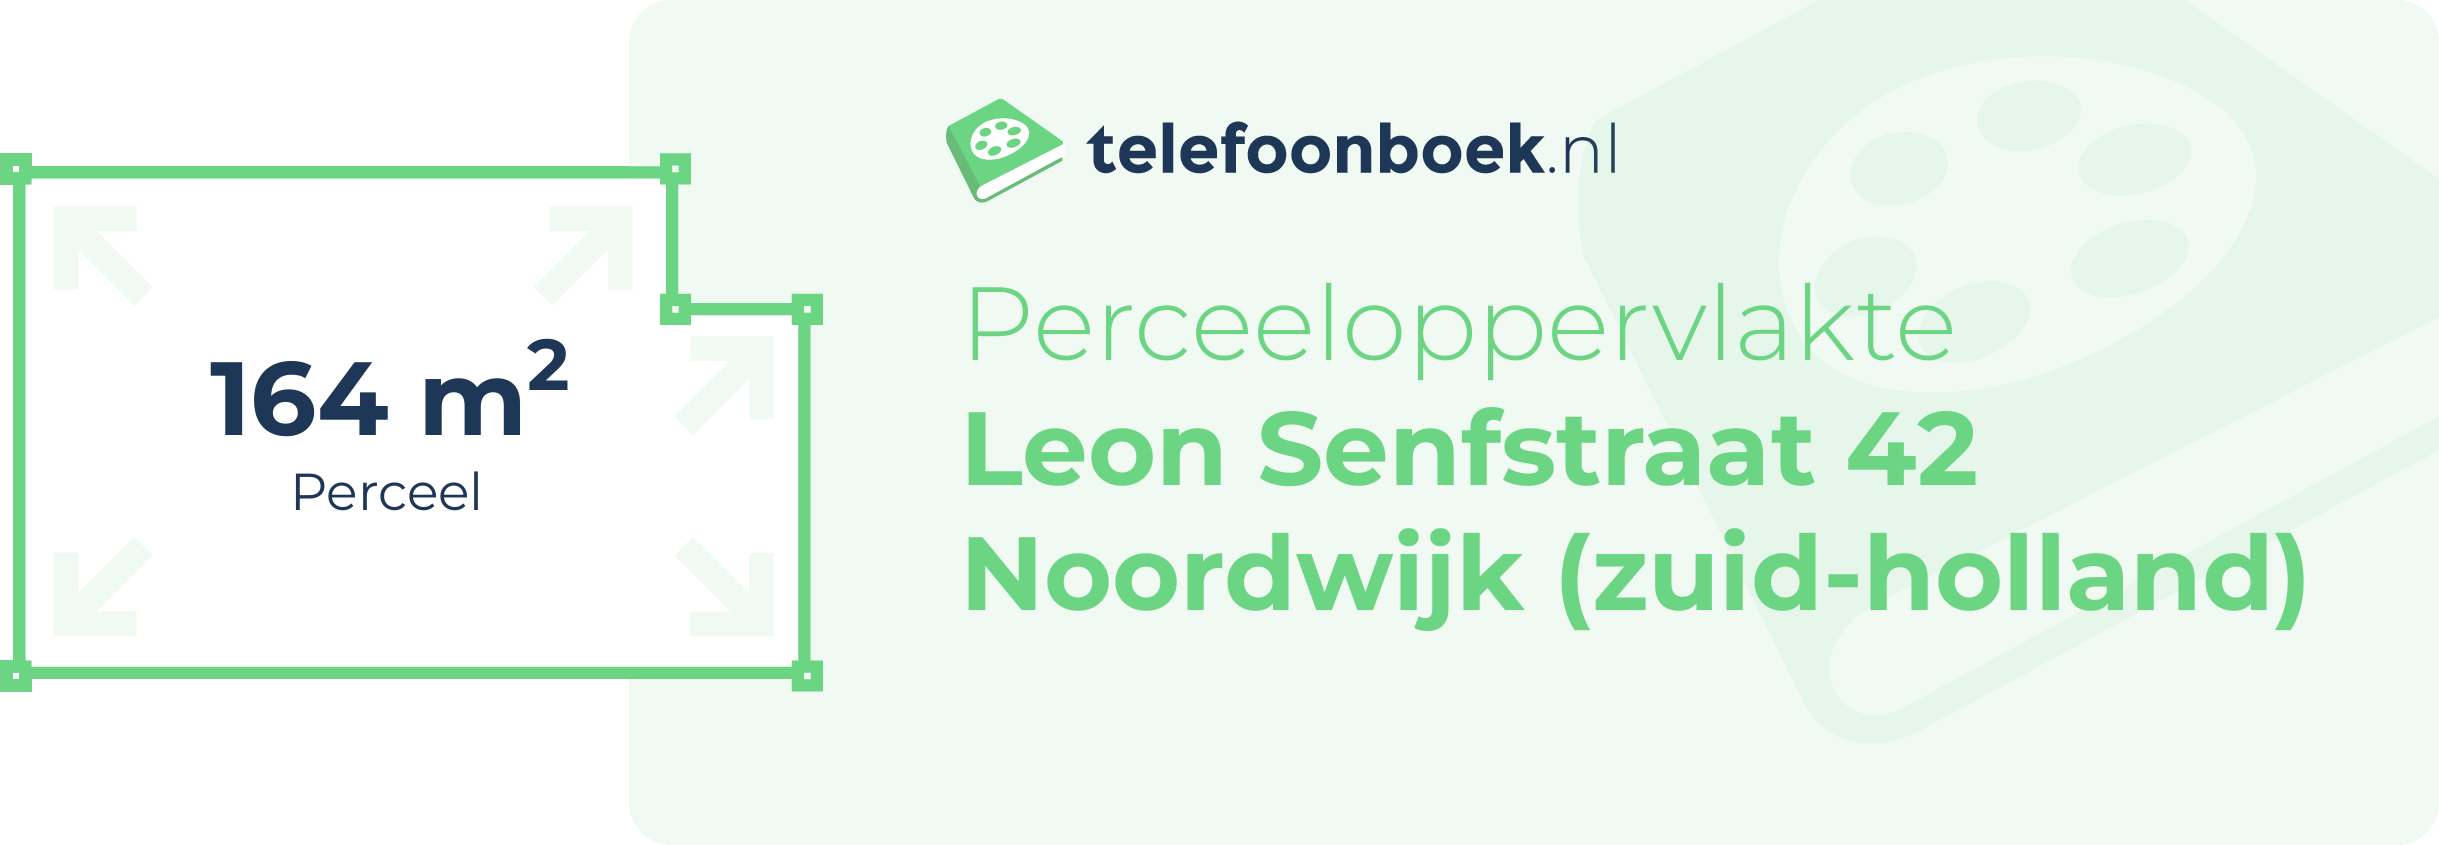 Perceeloppervlakte Leon Senfstraat 42 Noordwijk (Zuid-Holland)